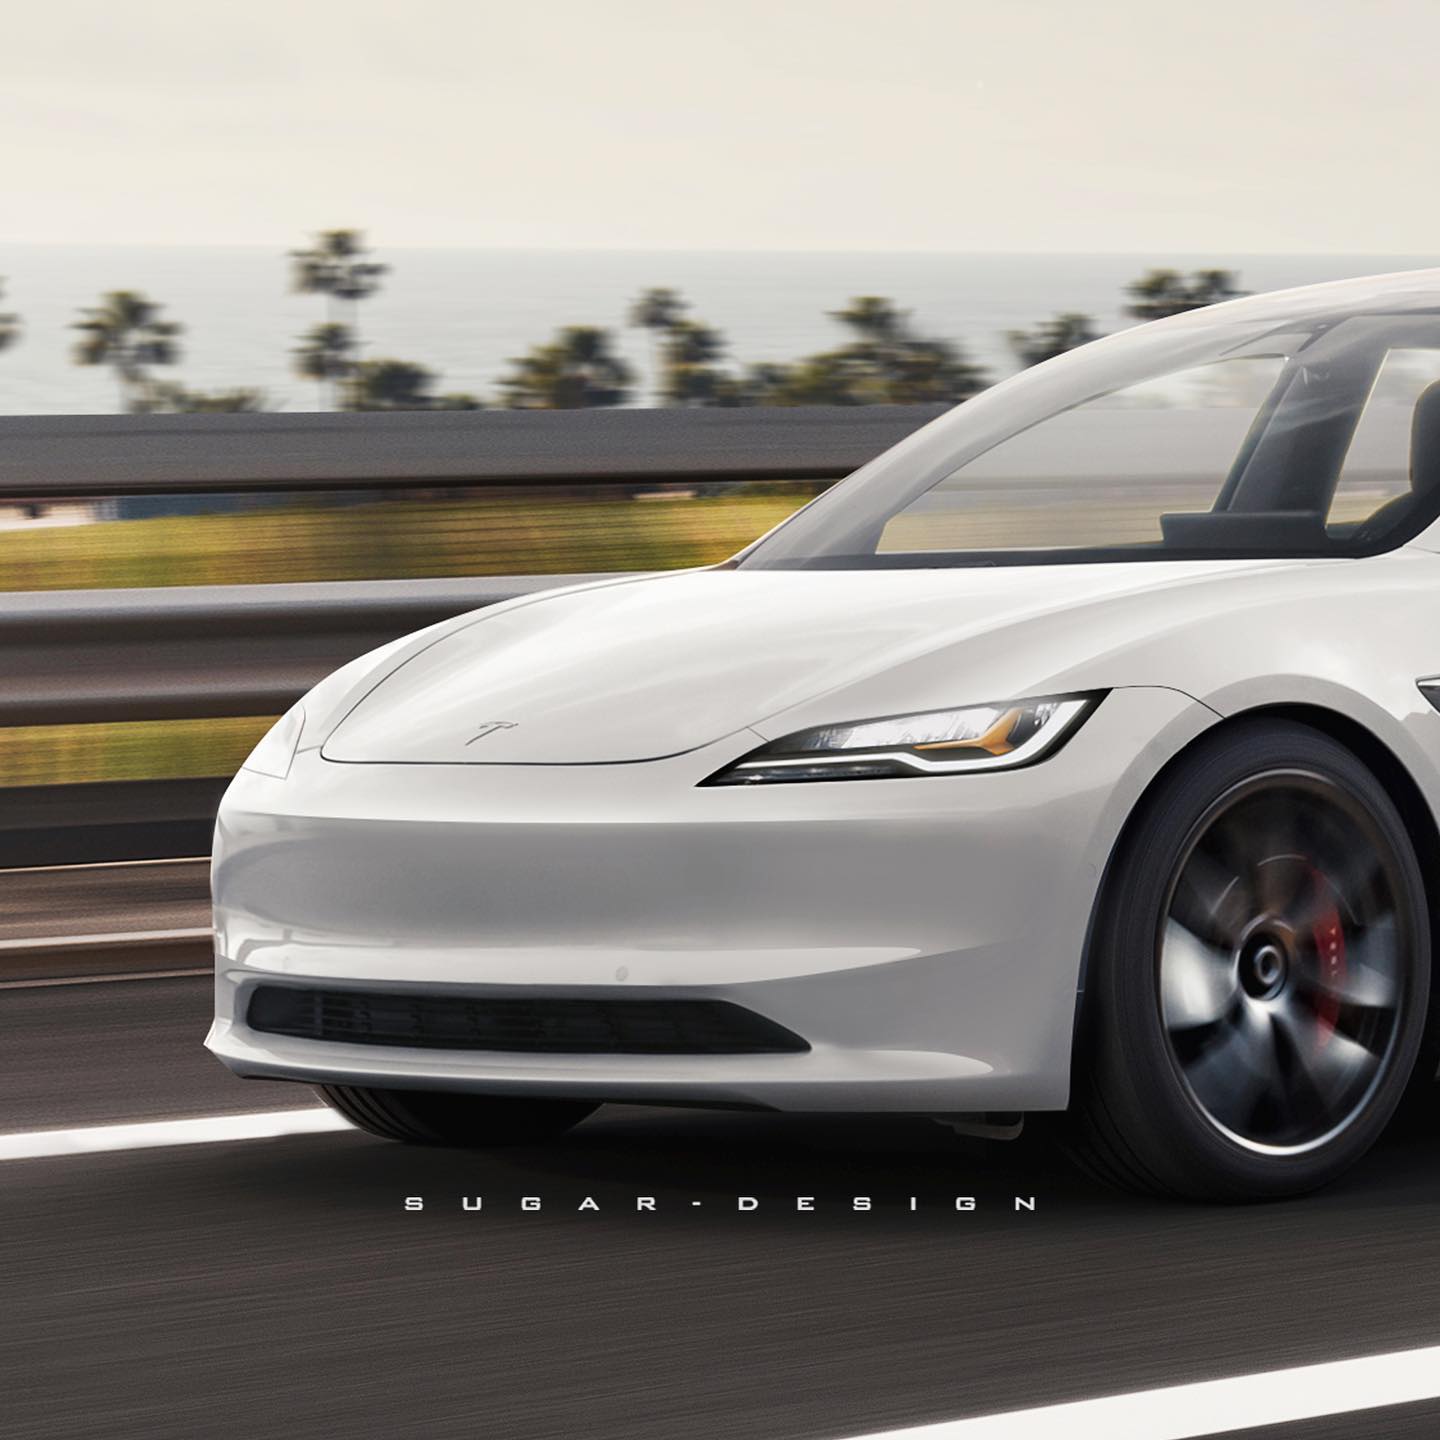 Streamlined Tesla Model 3 Project Highland Facelift Revealed Albeit